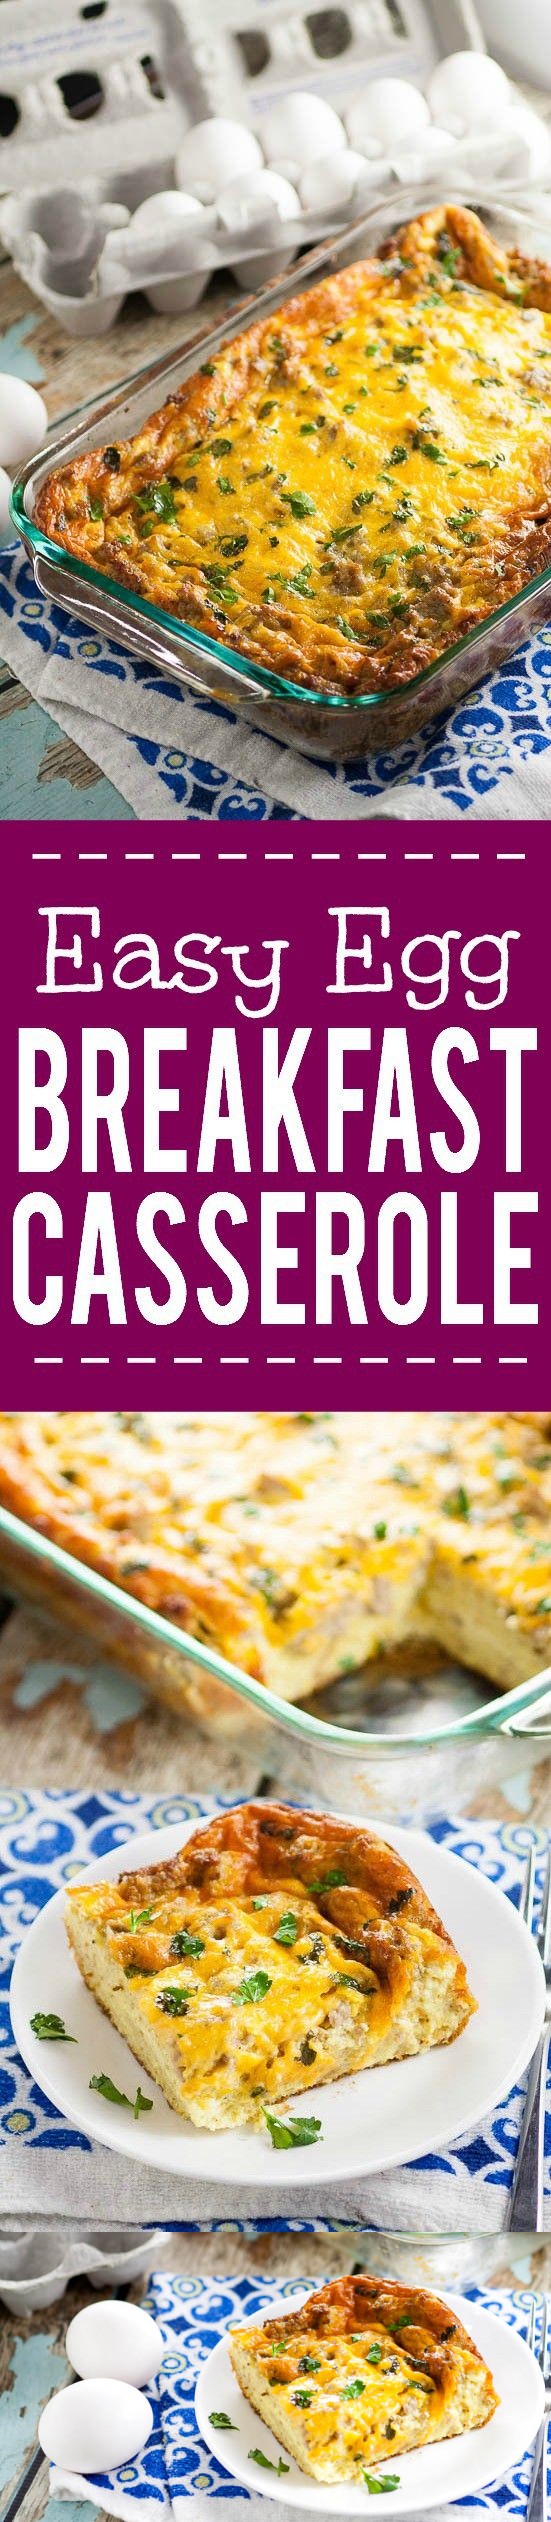 Easy Egg Breakfast Casserole